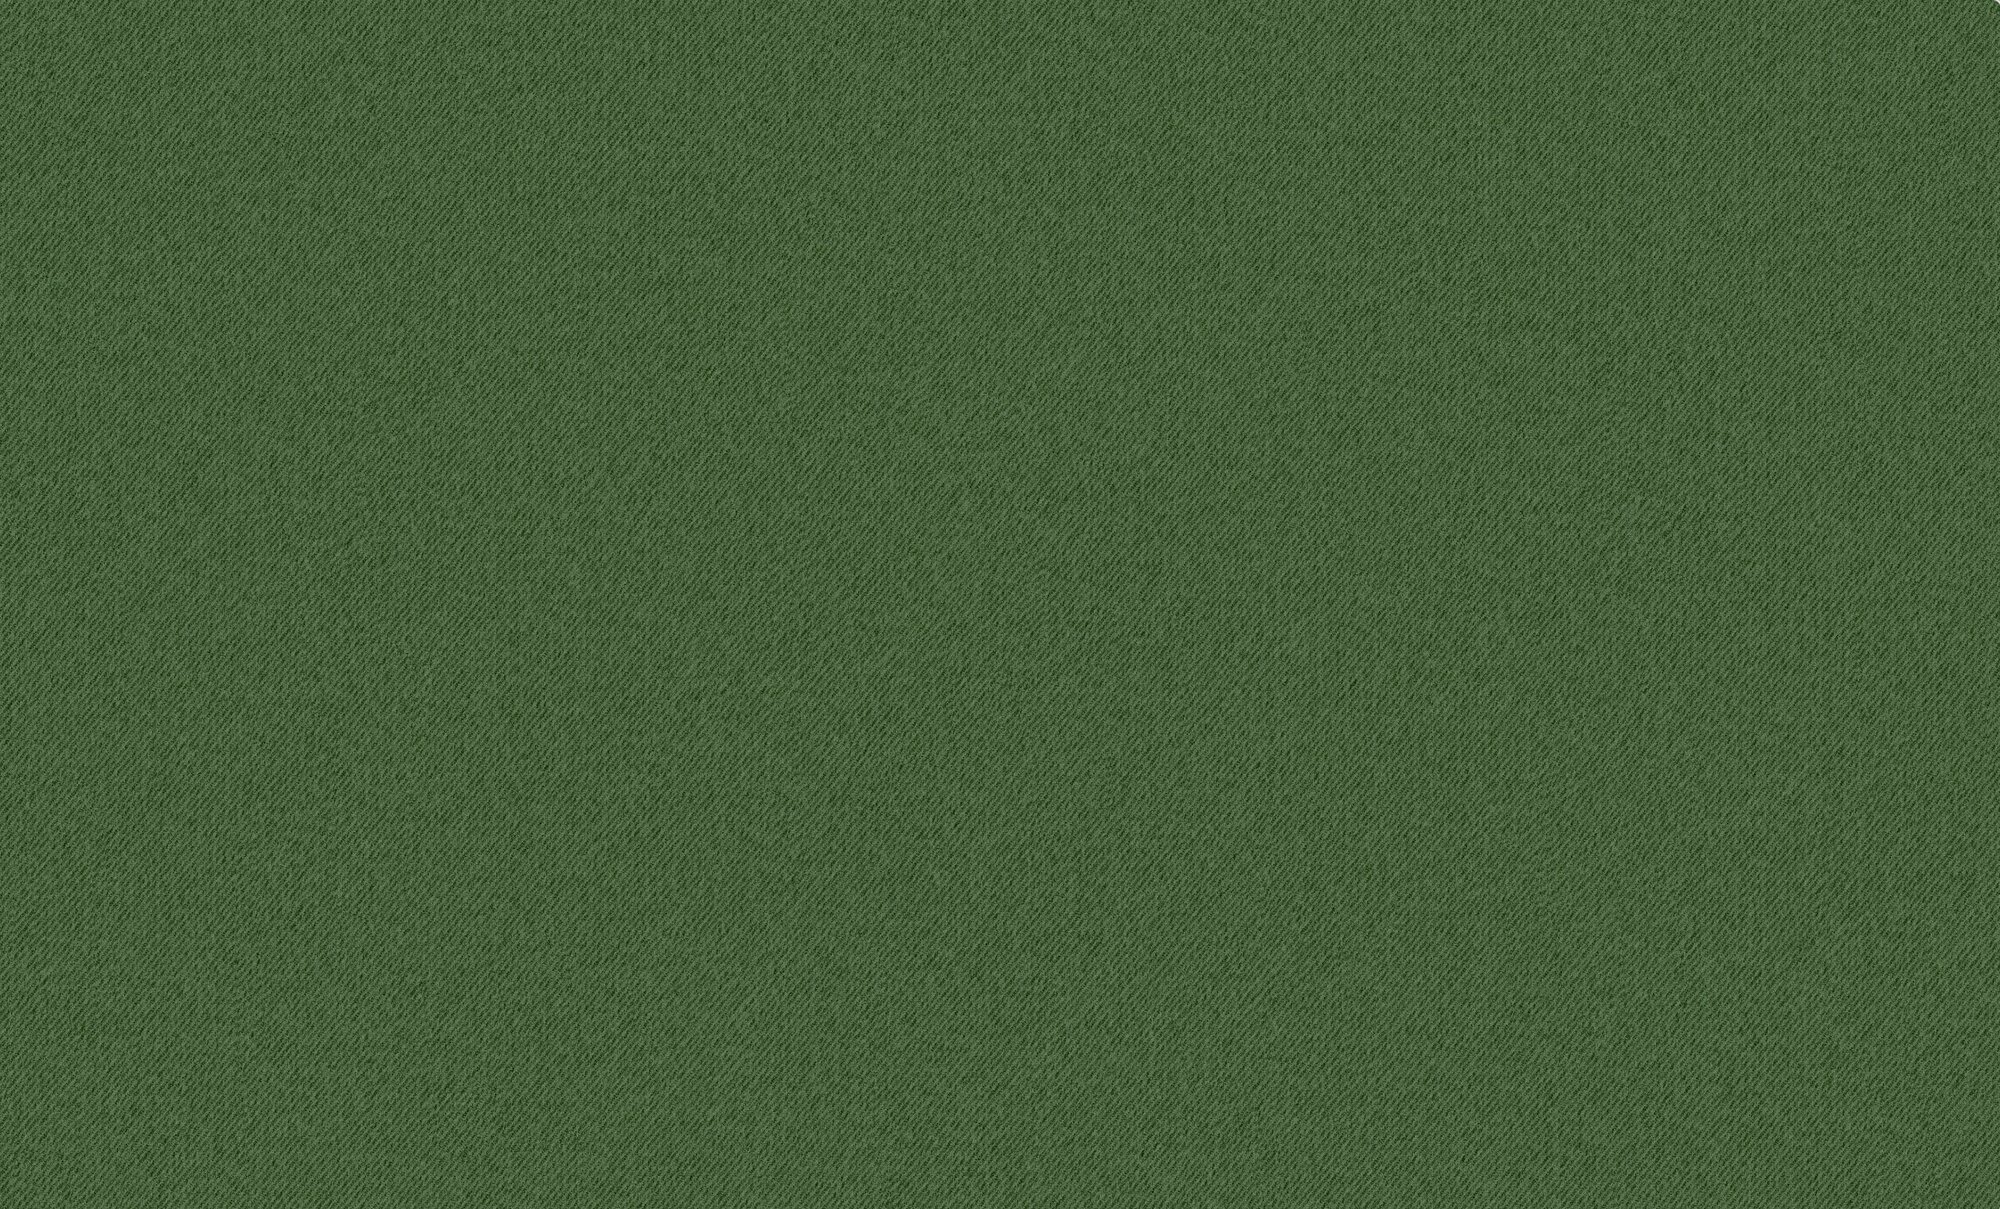 Обои WALL UP Sherlock 1.06 x 10.50 654776 на флизелиновой основе метровые, цвет зеленый, моющиеся, рисунок однотонные